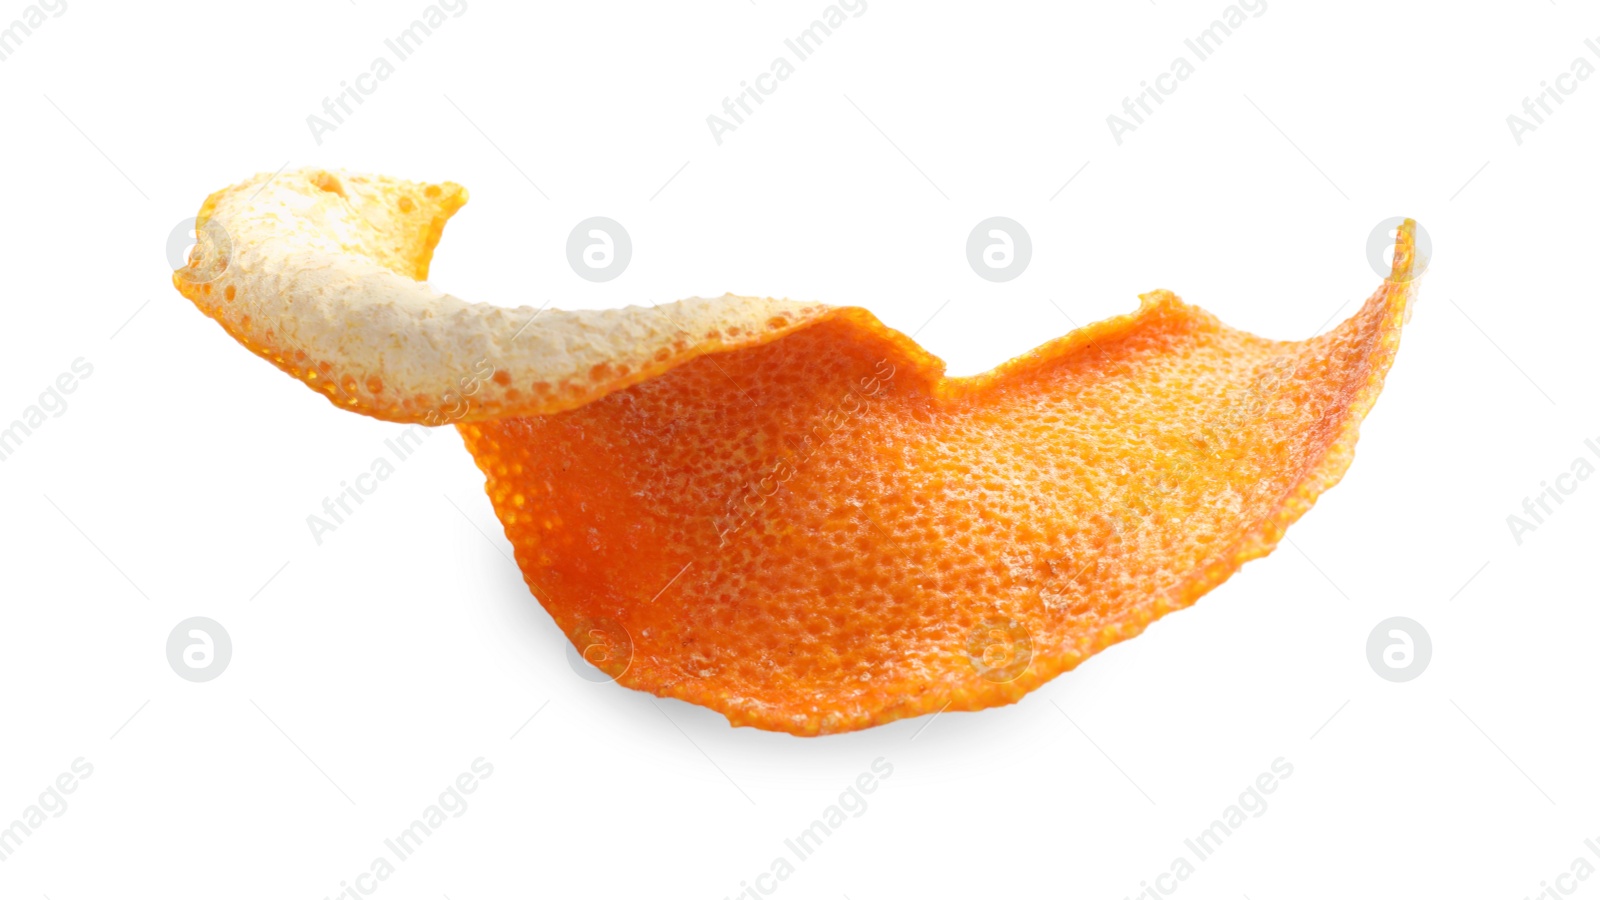 Photo of Dry orange fruit peel isolated on white